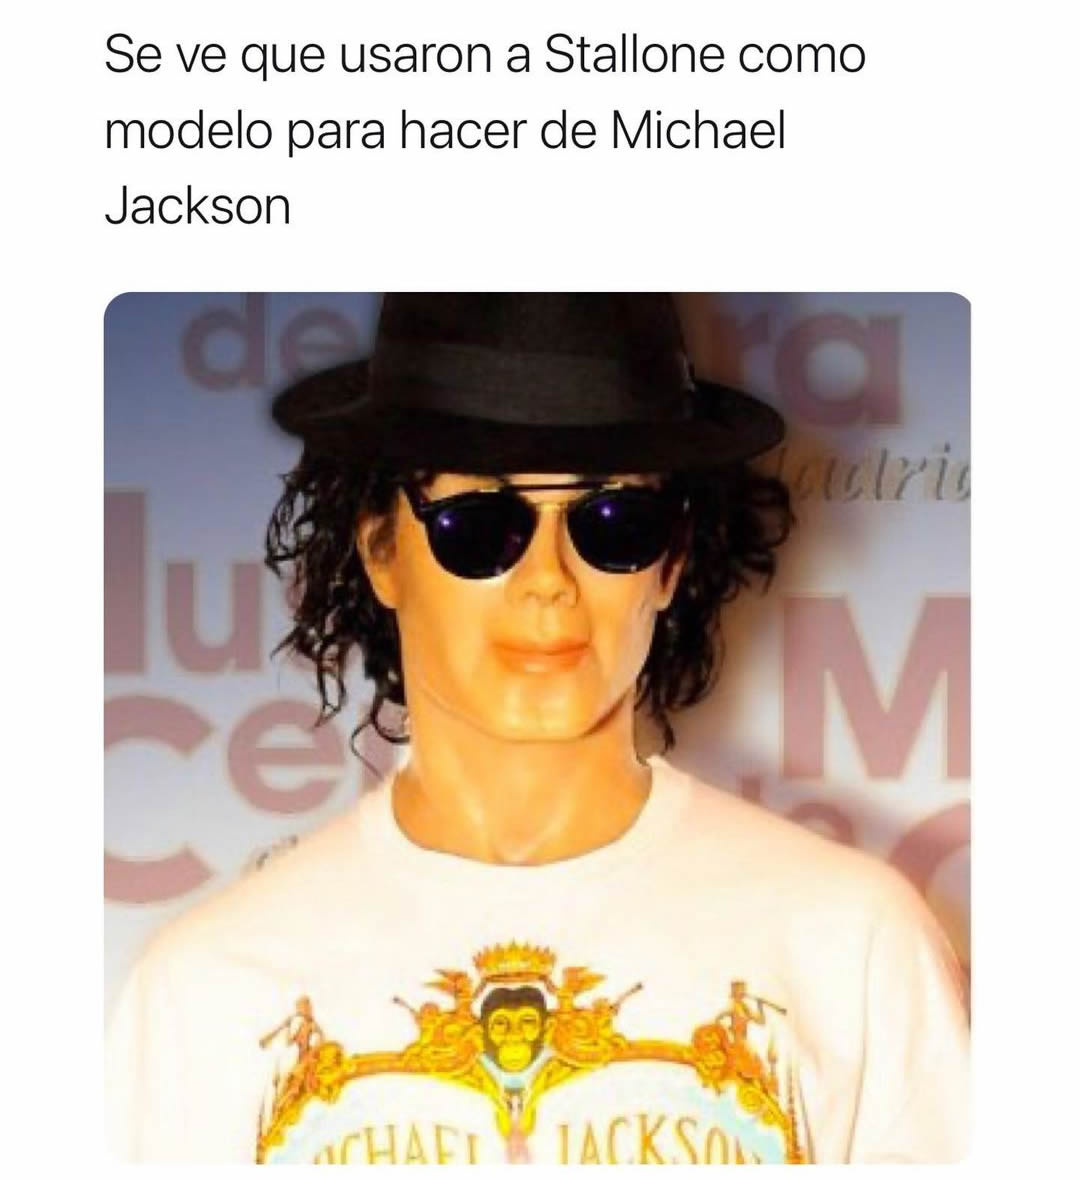 Se ve que usaron a Stallone como modelo para hacer de Michael Jackson.